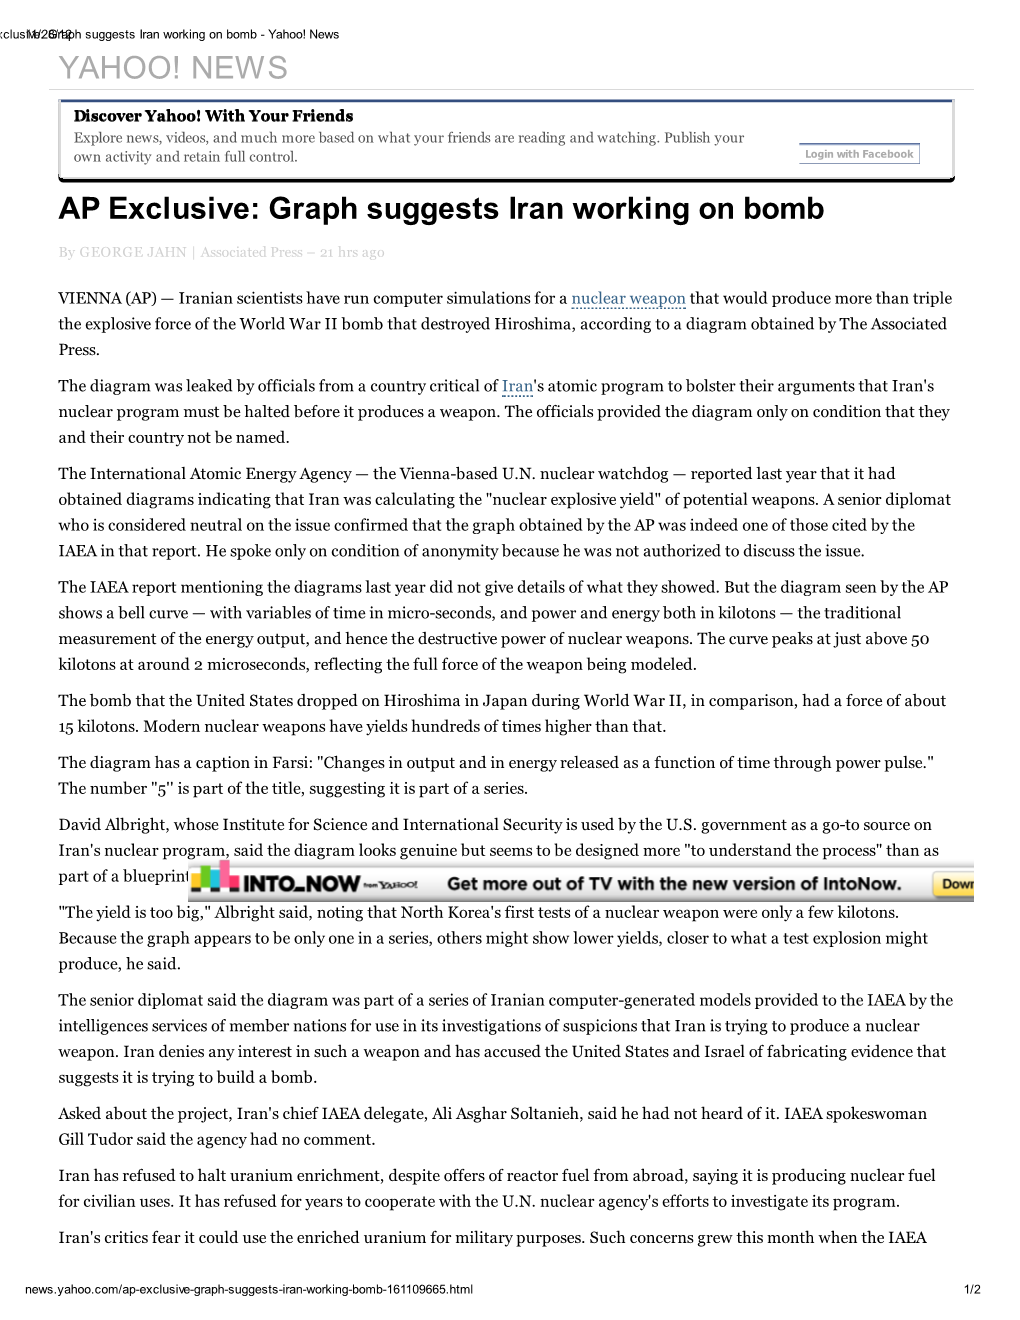 Iran Working on Bomb - Yahoo! News YAHOO! NEWS